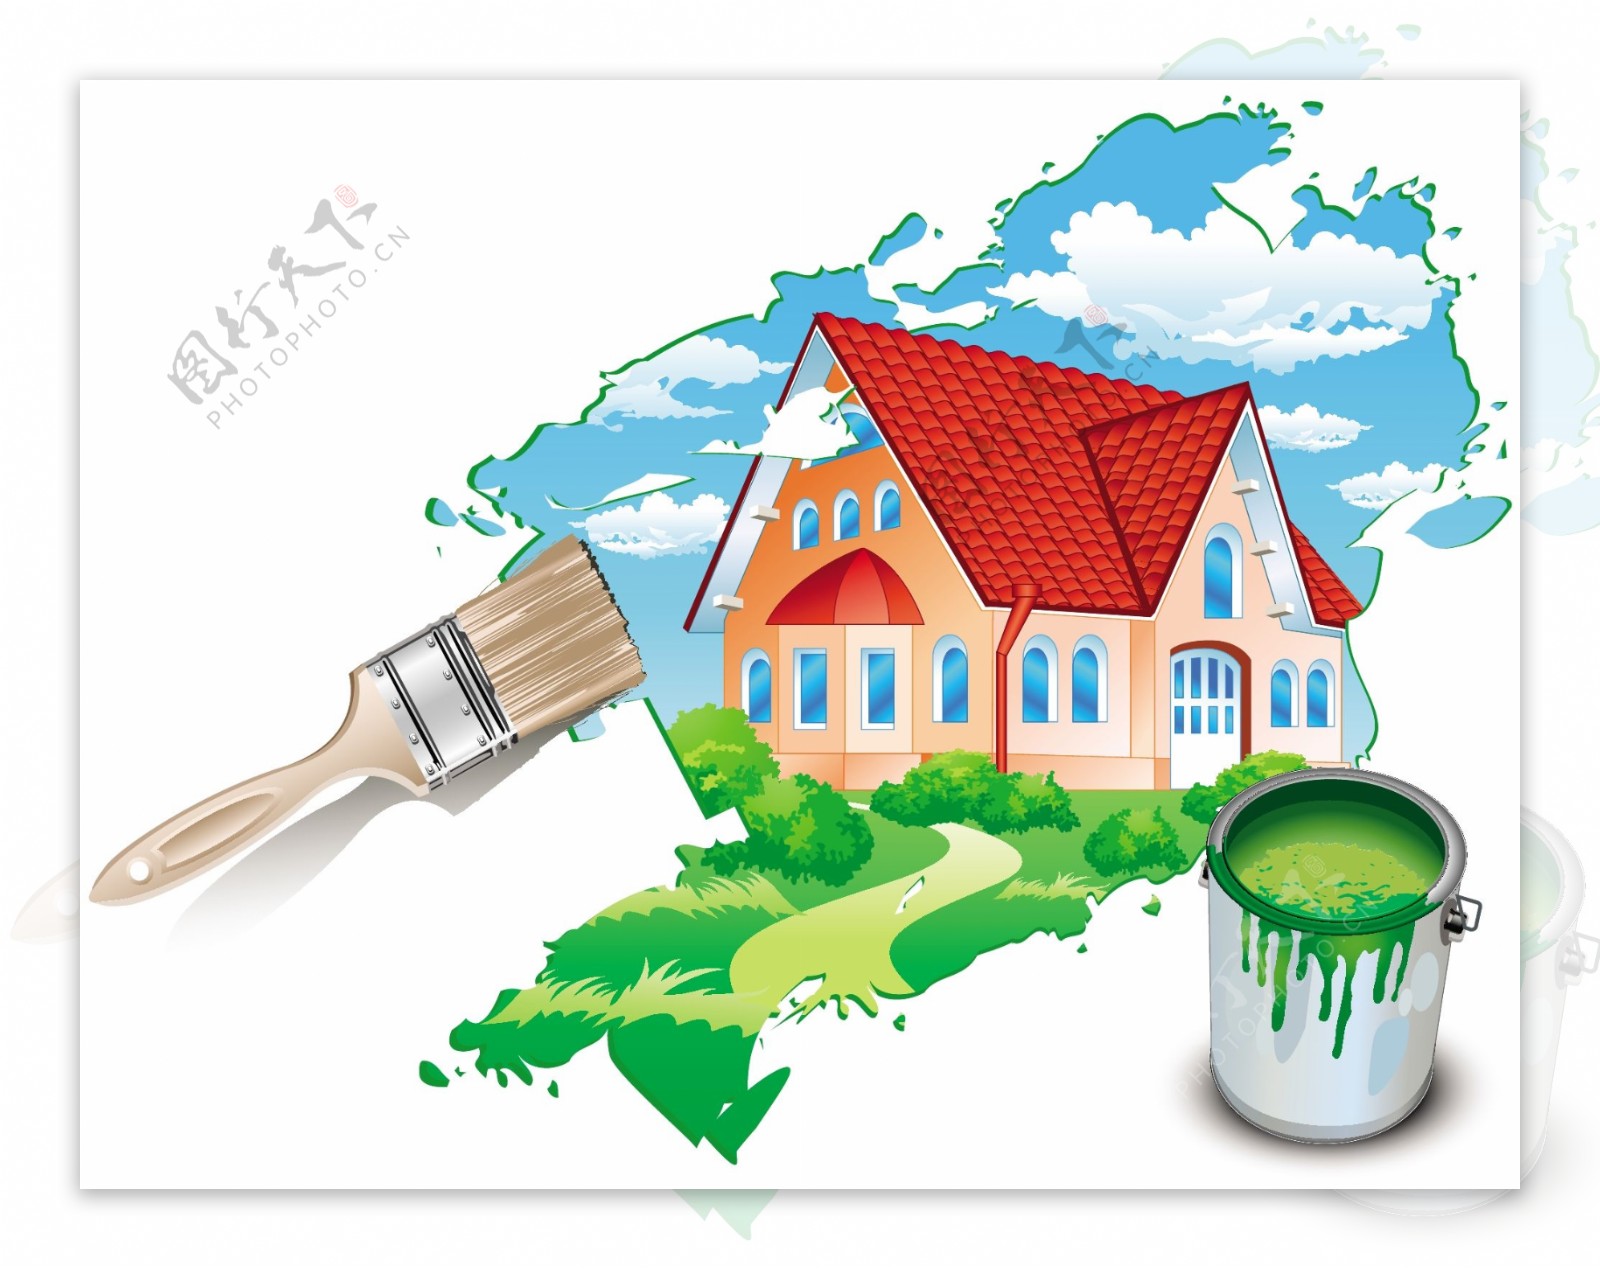 油漆刷与房子矢量素材